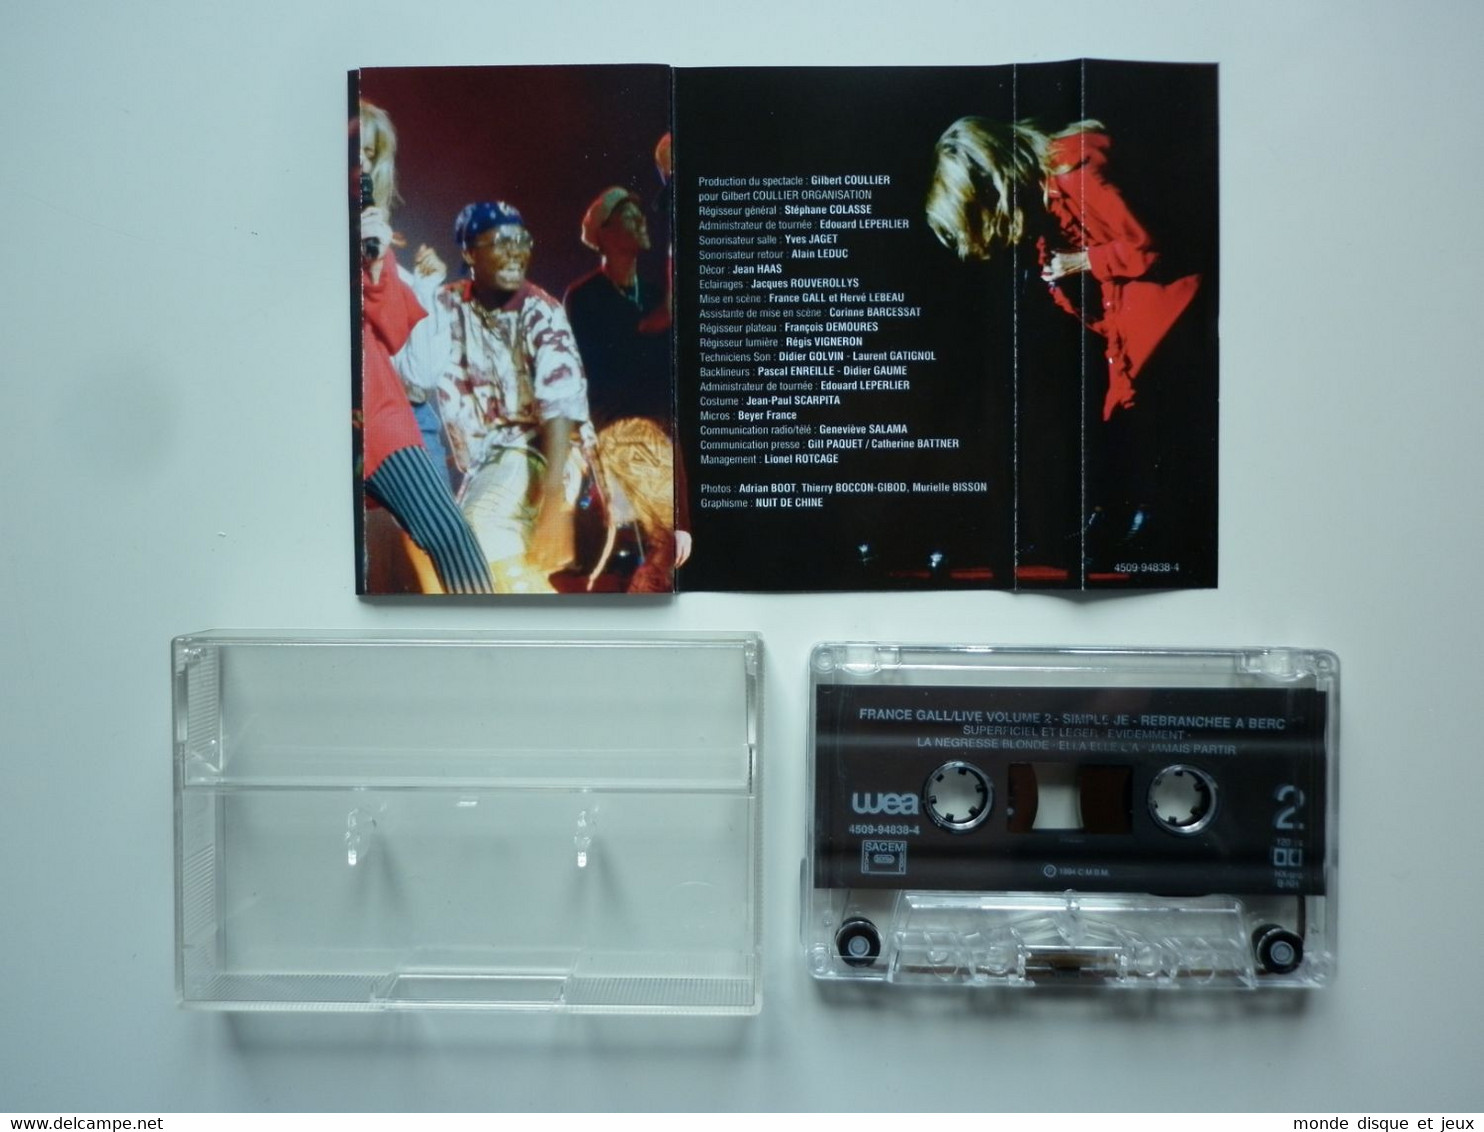 France Gall Cassette K7 Album Simple Je (Rebranchée A Bercy 93) - Cassettes Audio